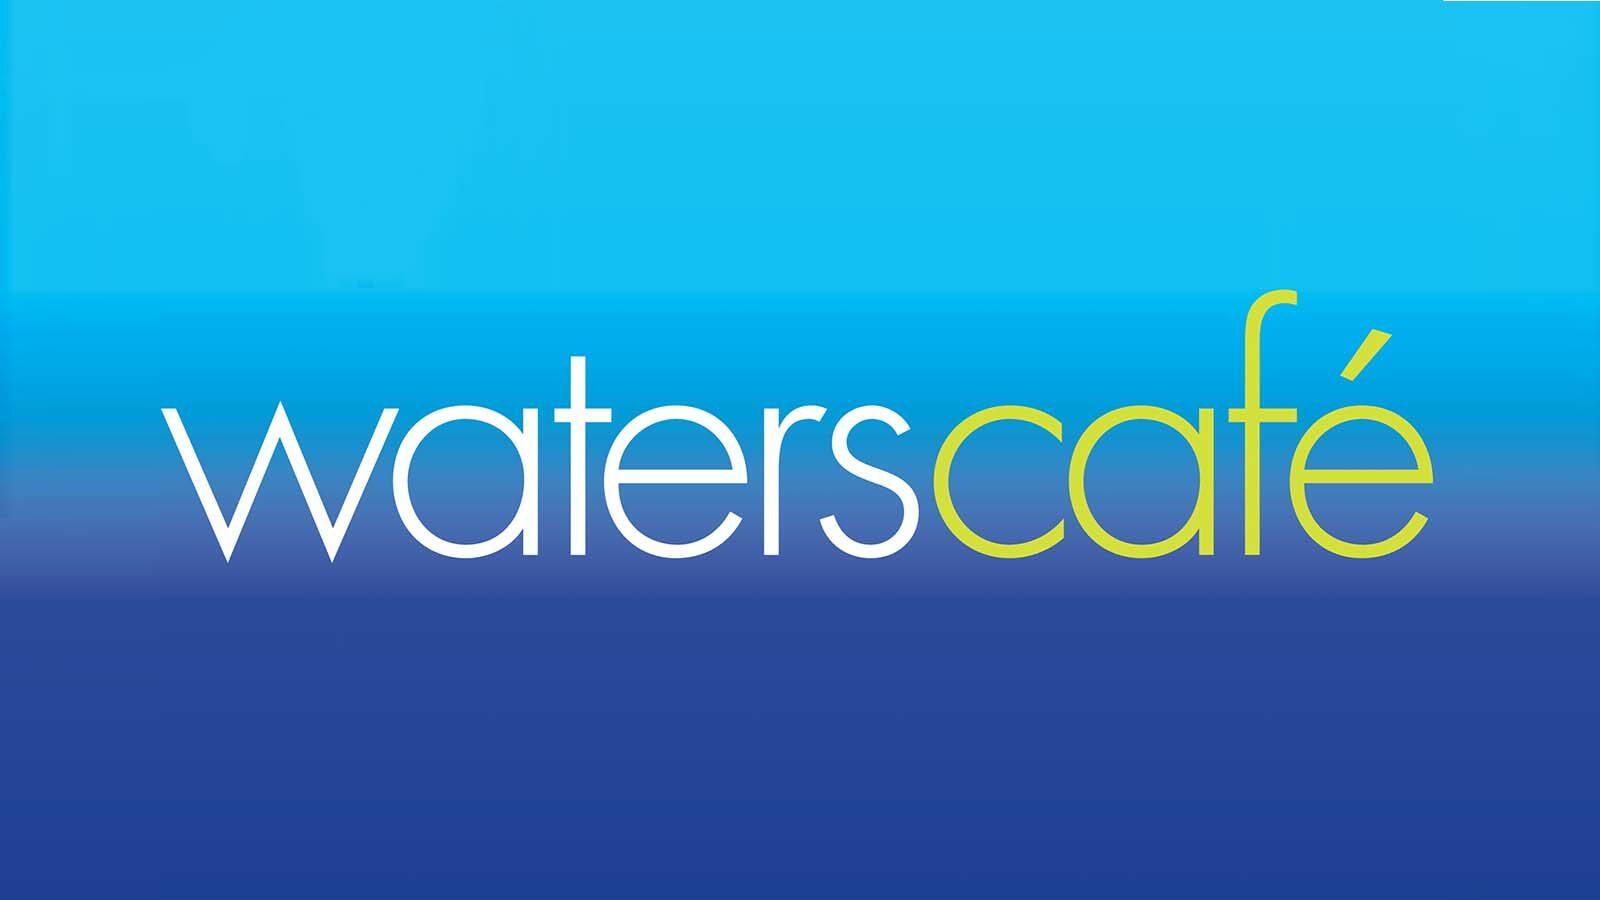 Waters Café